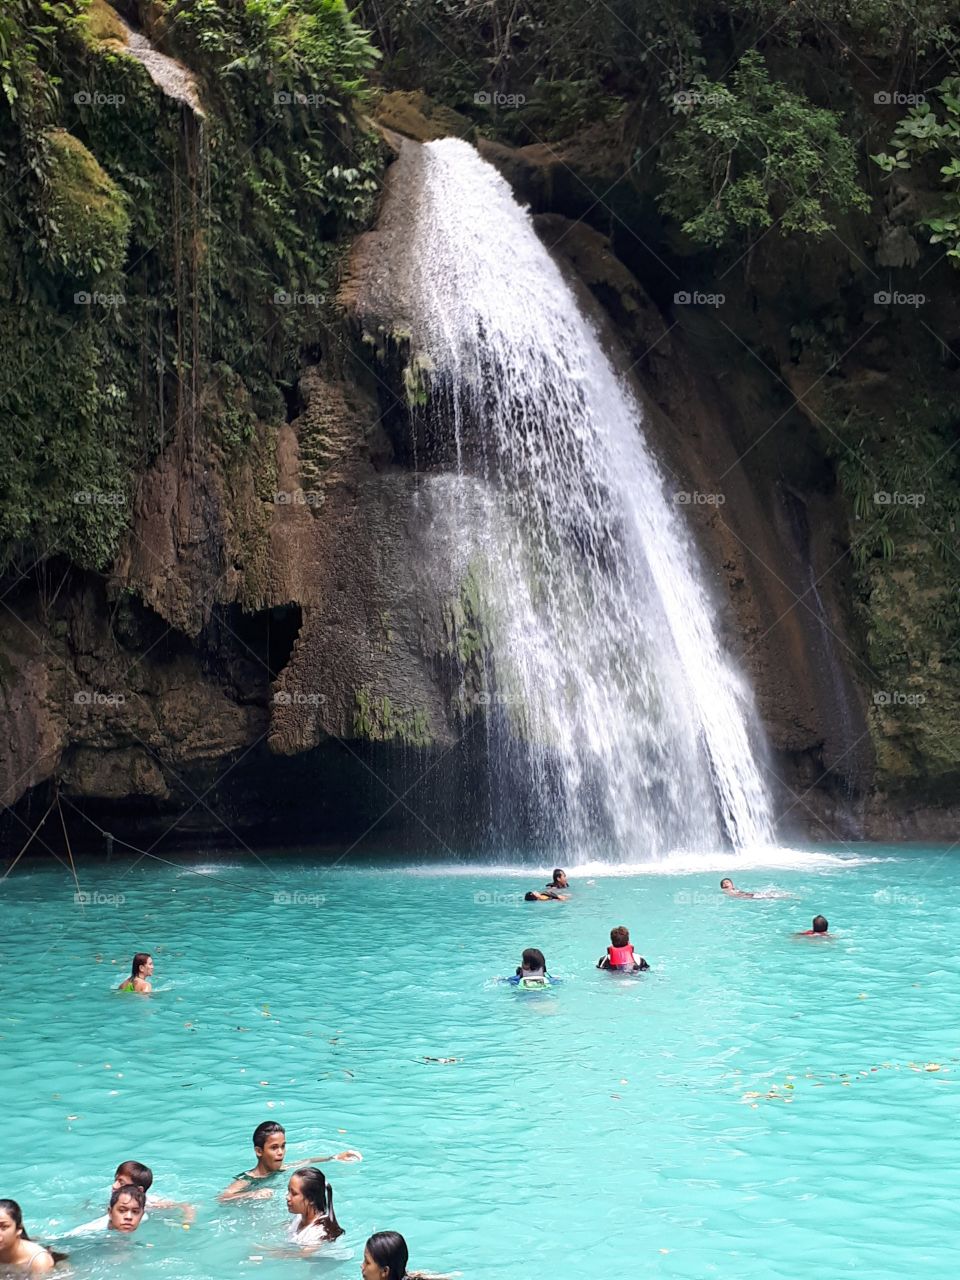 Raw photo of Kawasan falls in Cebu